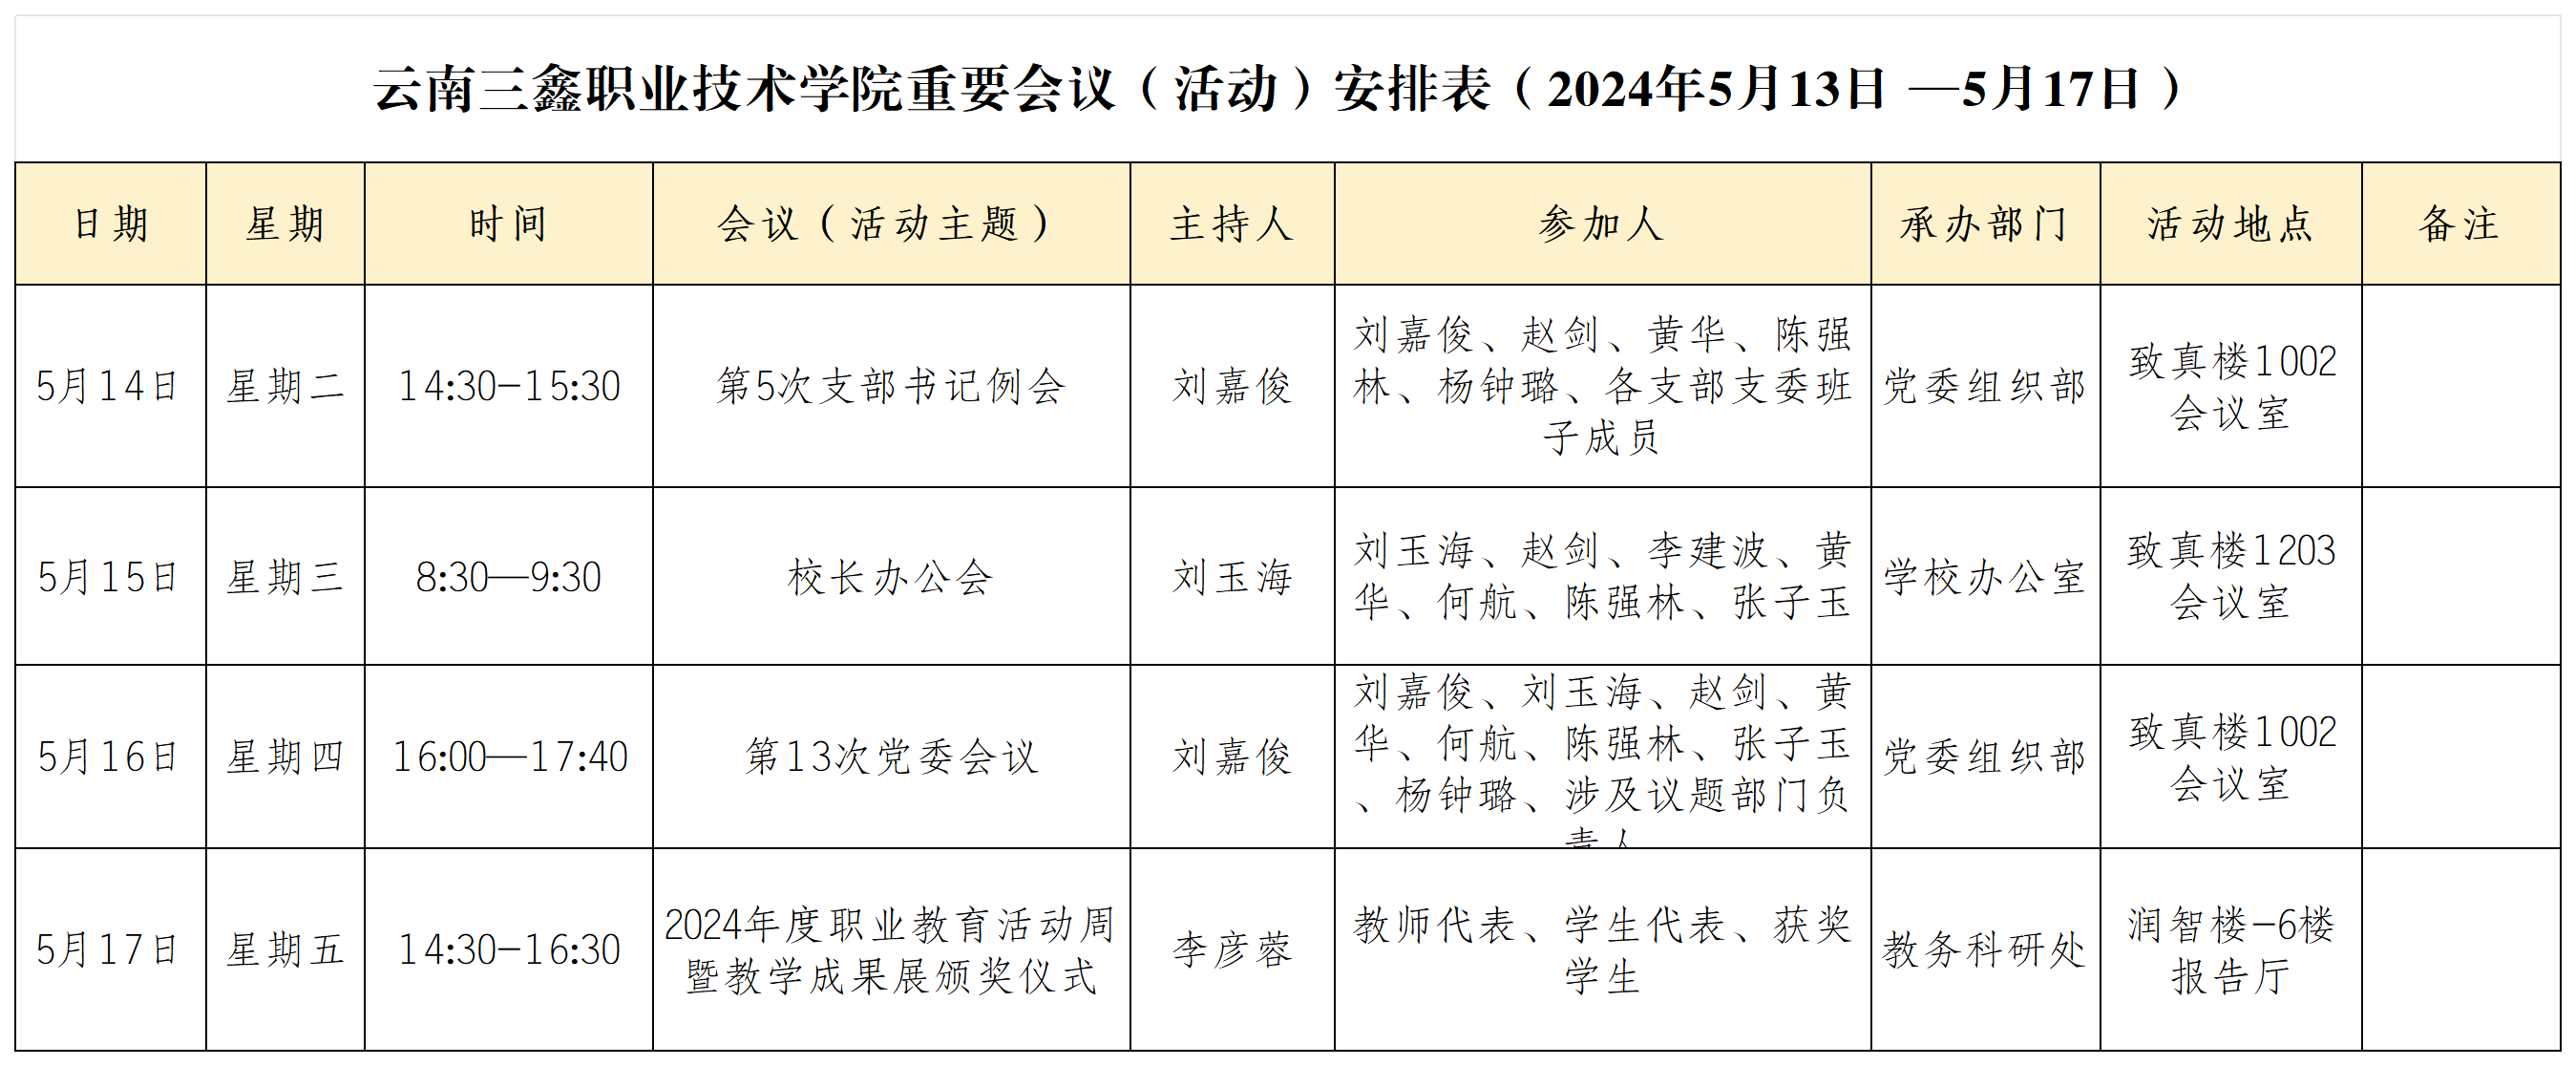 云南三鑫职业技术学院重要会议（活动）安排表（2024年5月13日 —5月17日）